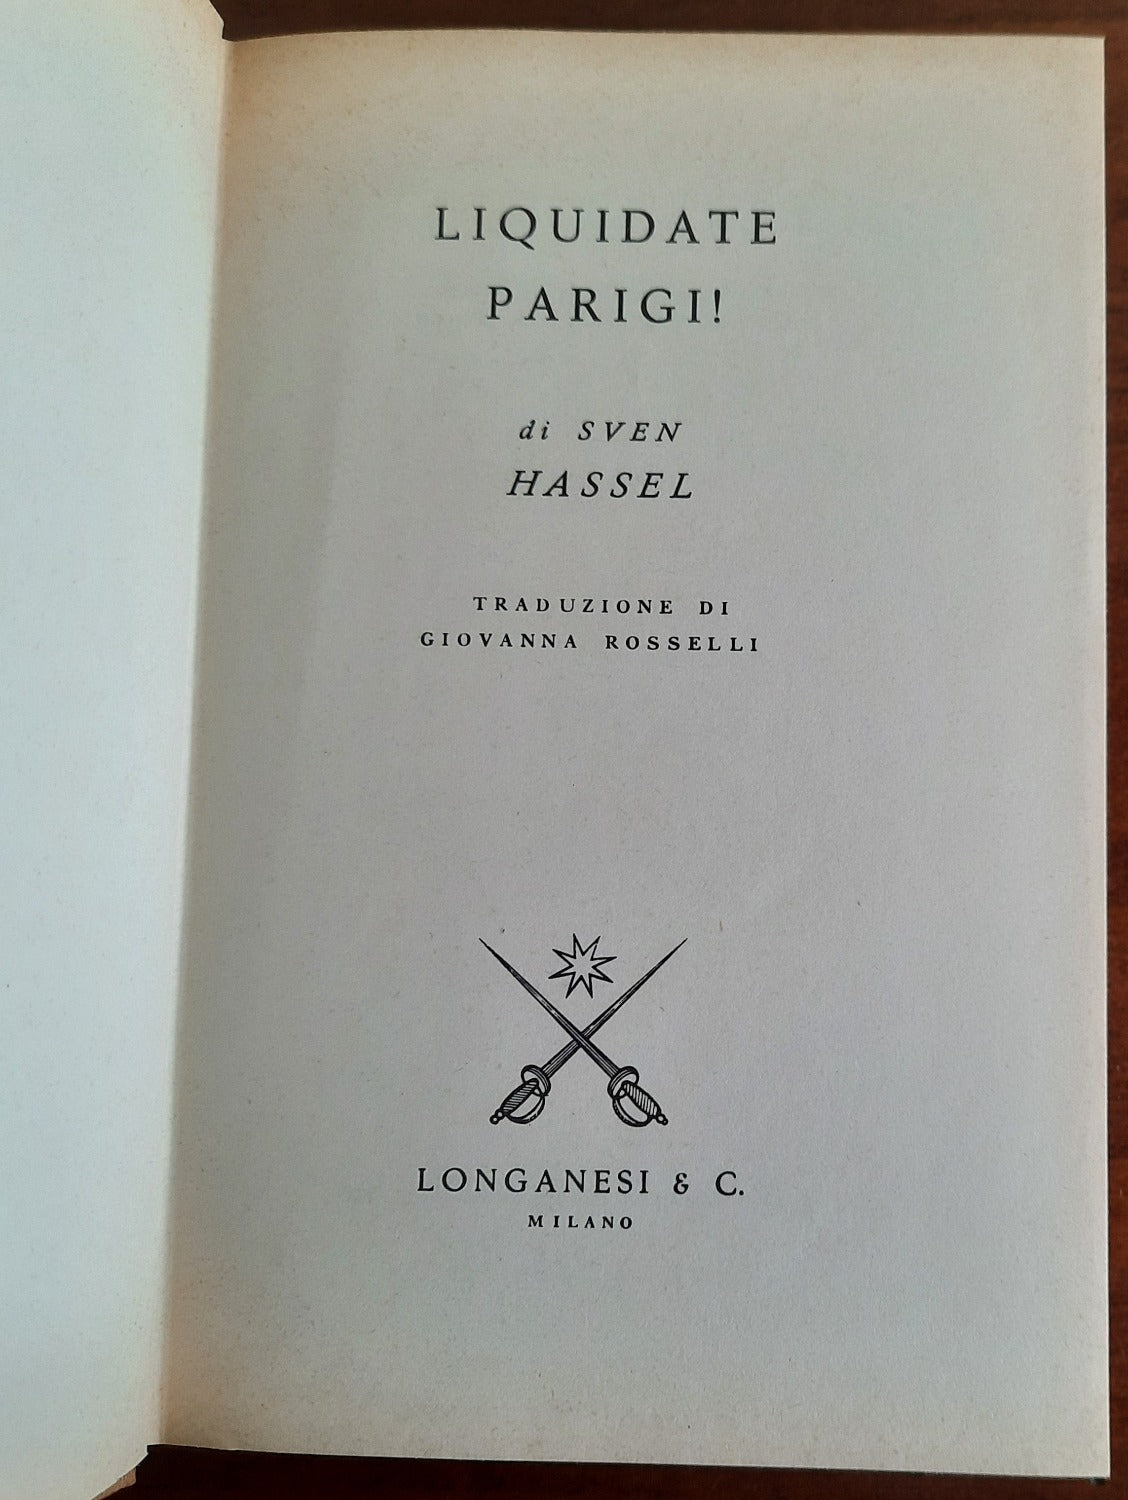 Liquidate Parigi! - Longanesi & C.